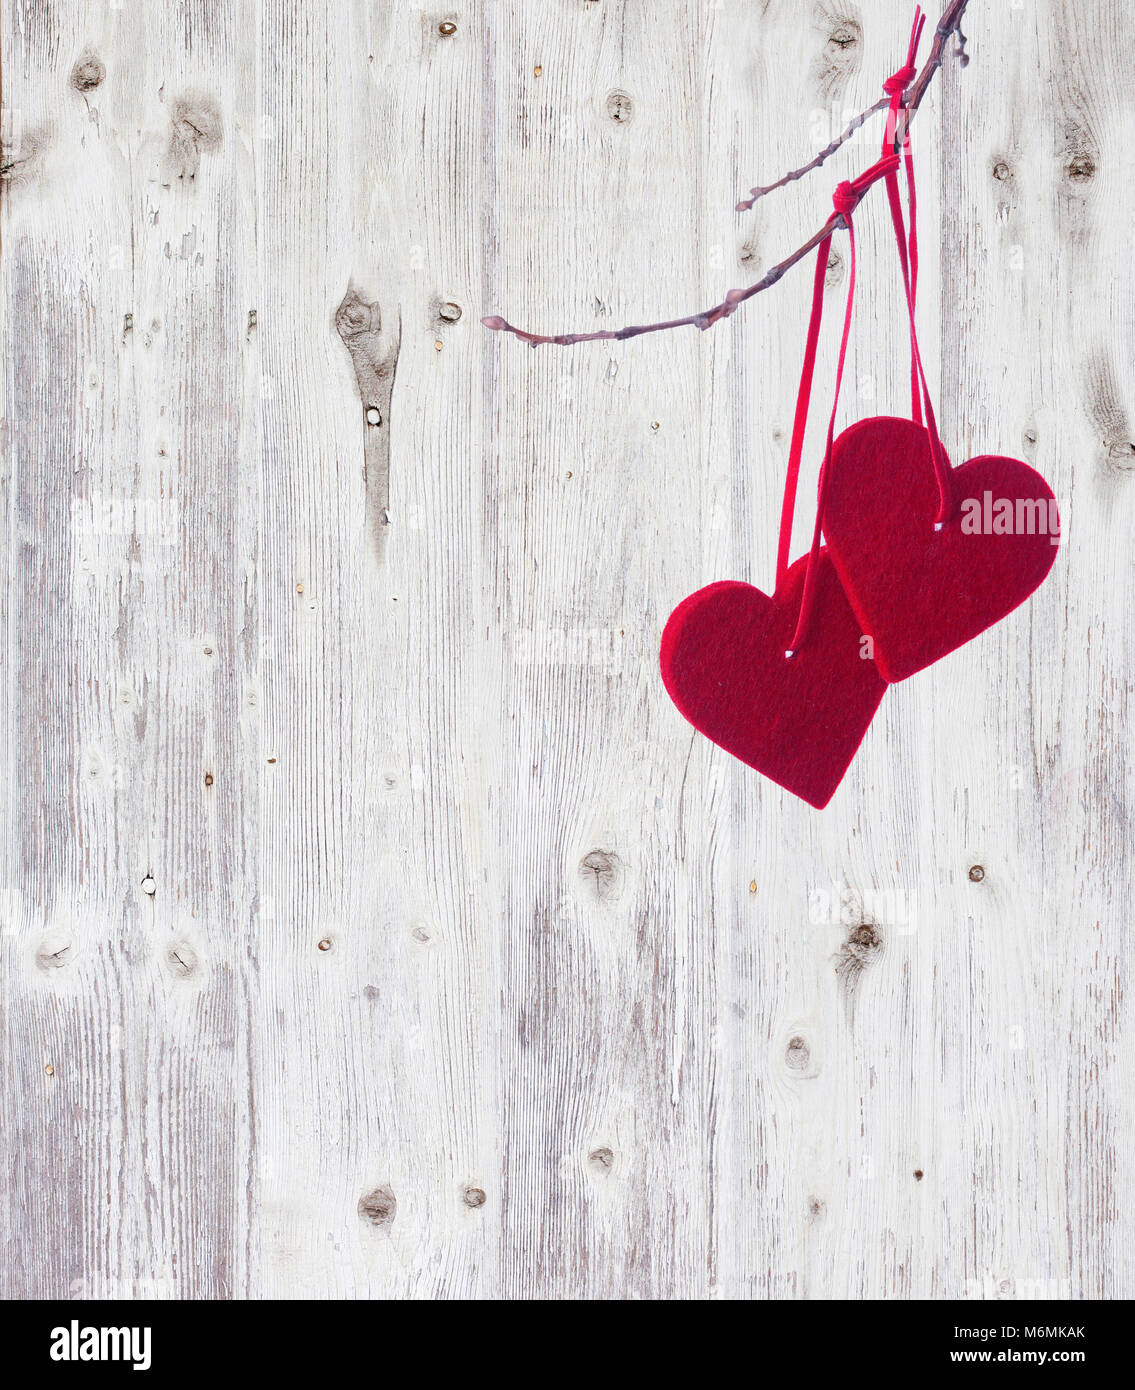 Zwei rote Herzen, hängend an einer Niederlassung über die alten hölzernen Hintergrund. Stockfoto